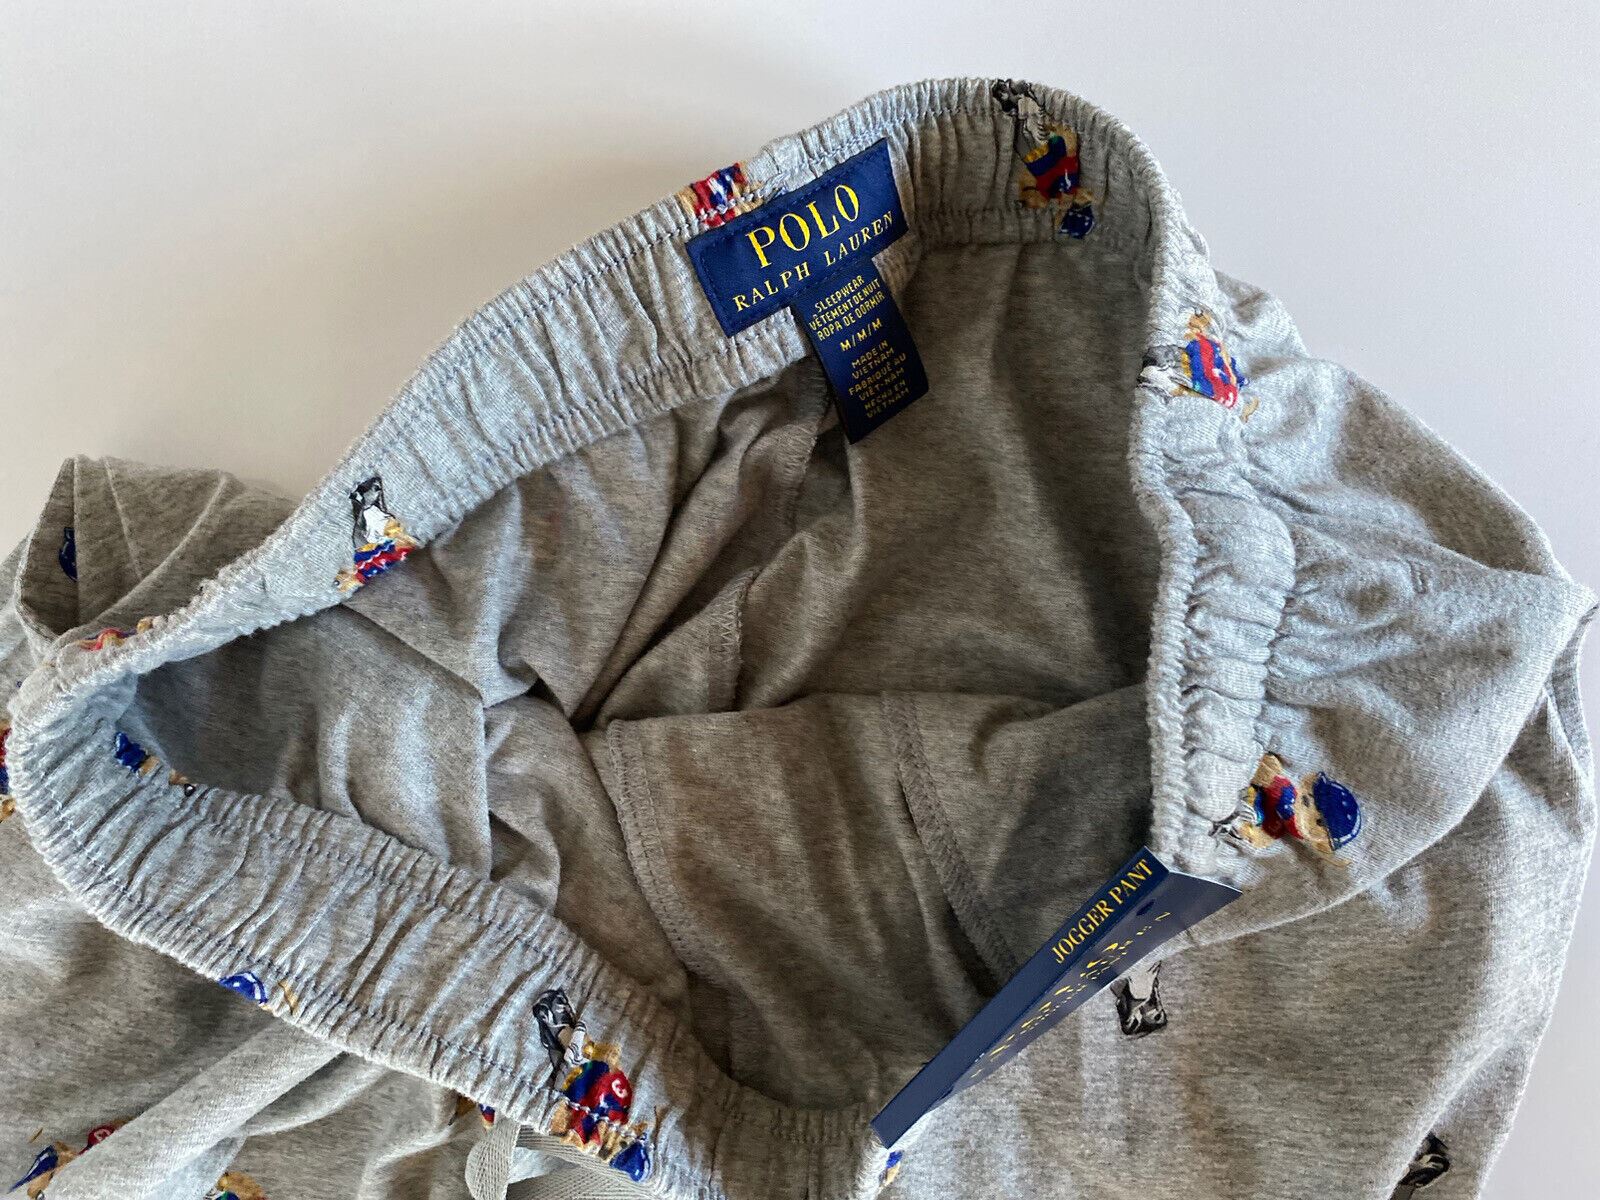 Мужские серые пижамные штаны NWT Polo Ralph Lauren Bear, серые, хлопковые, средние